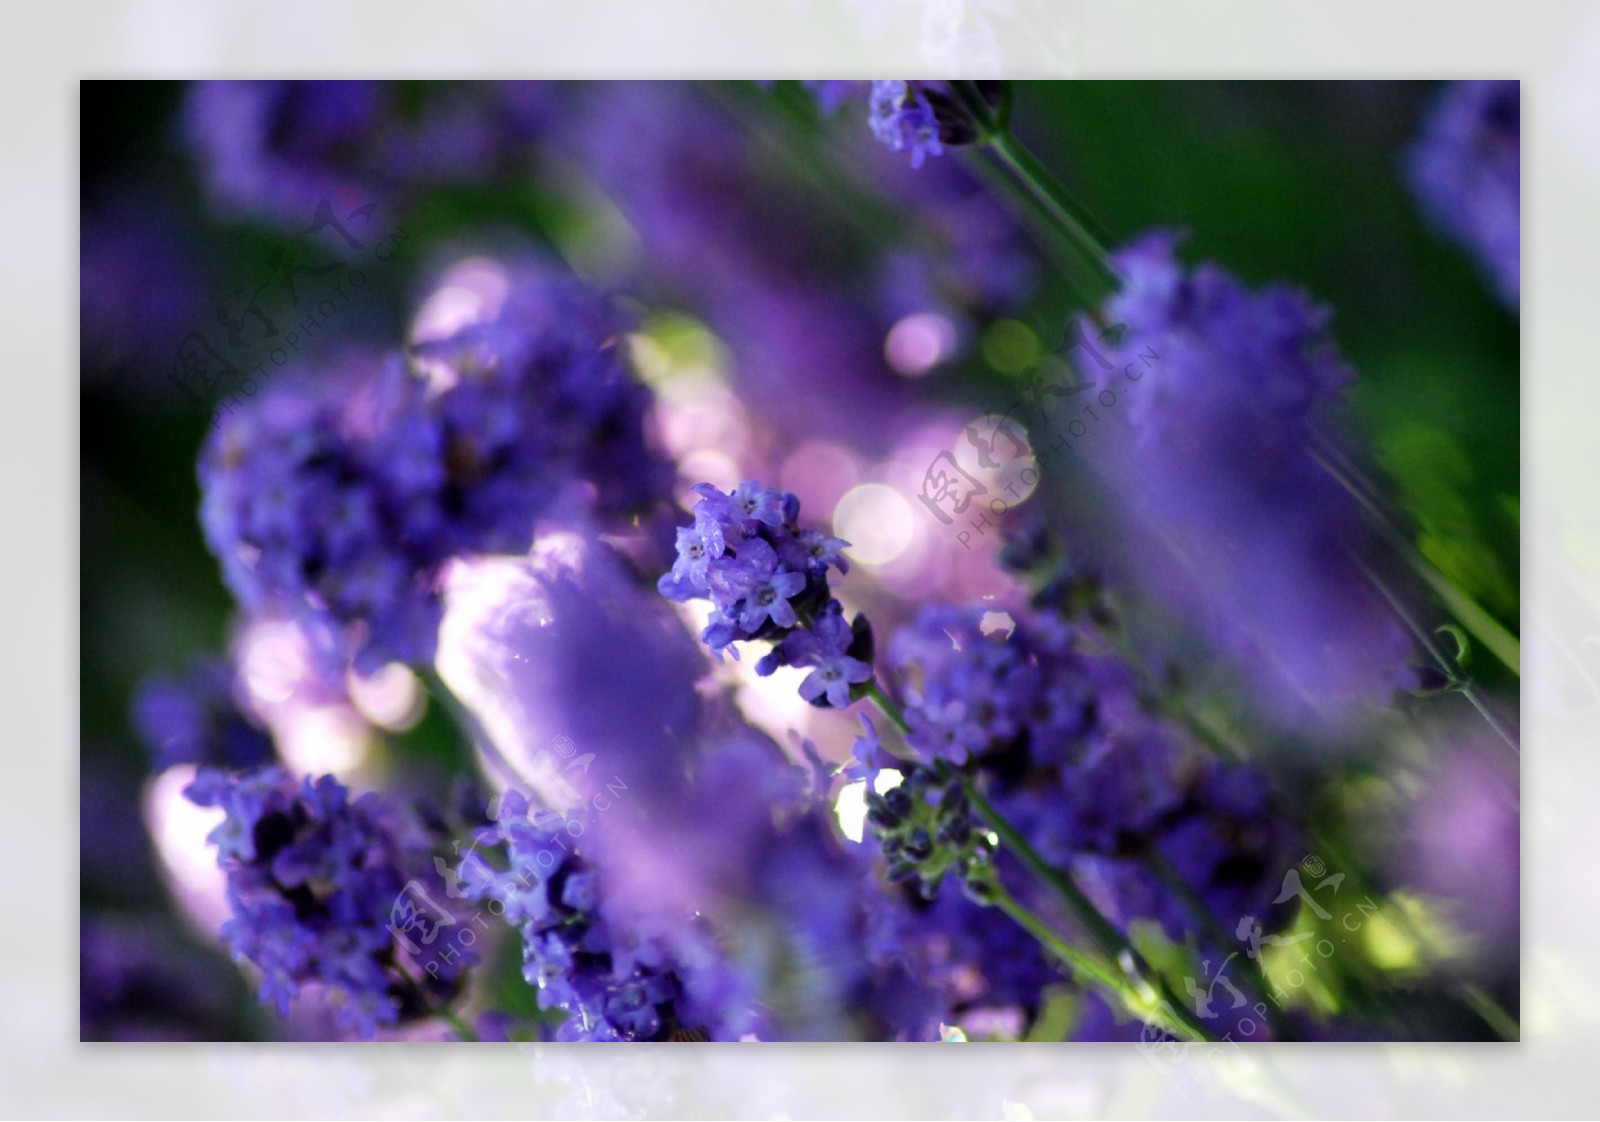 梦幻紫色鲜花